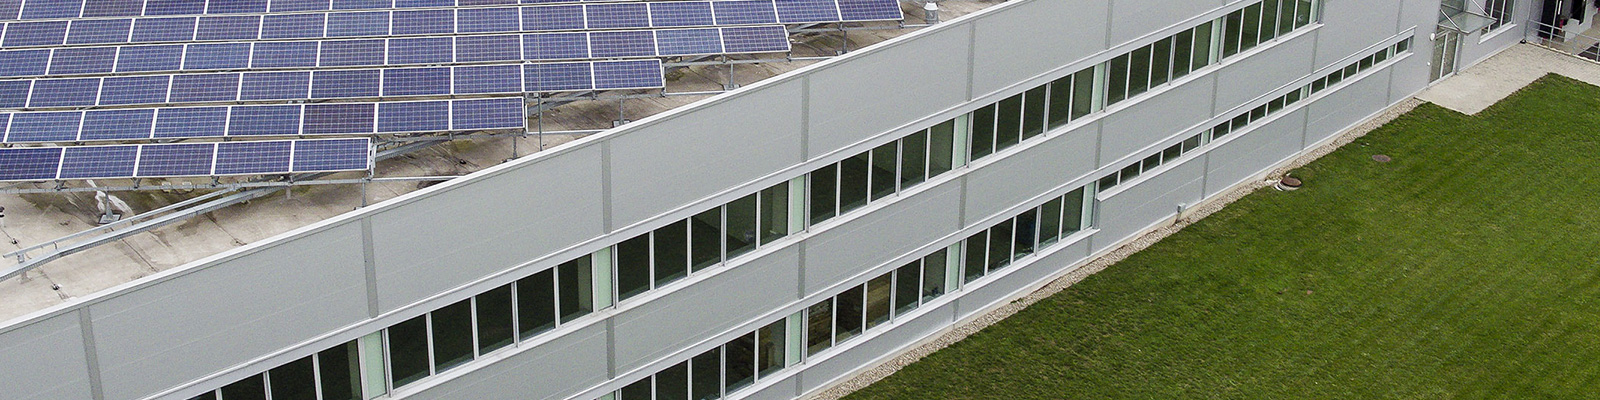 Plantas fotovoltaicas comerciales en tejados